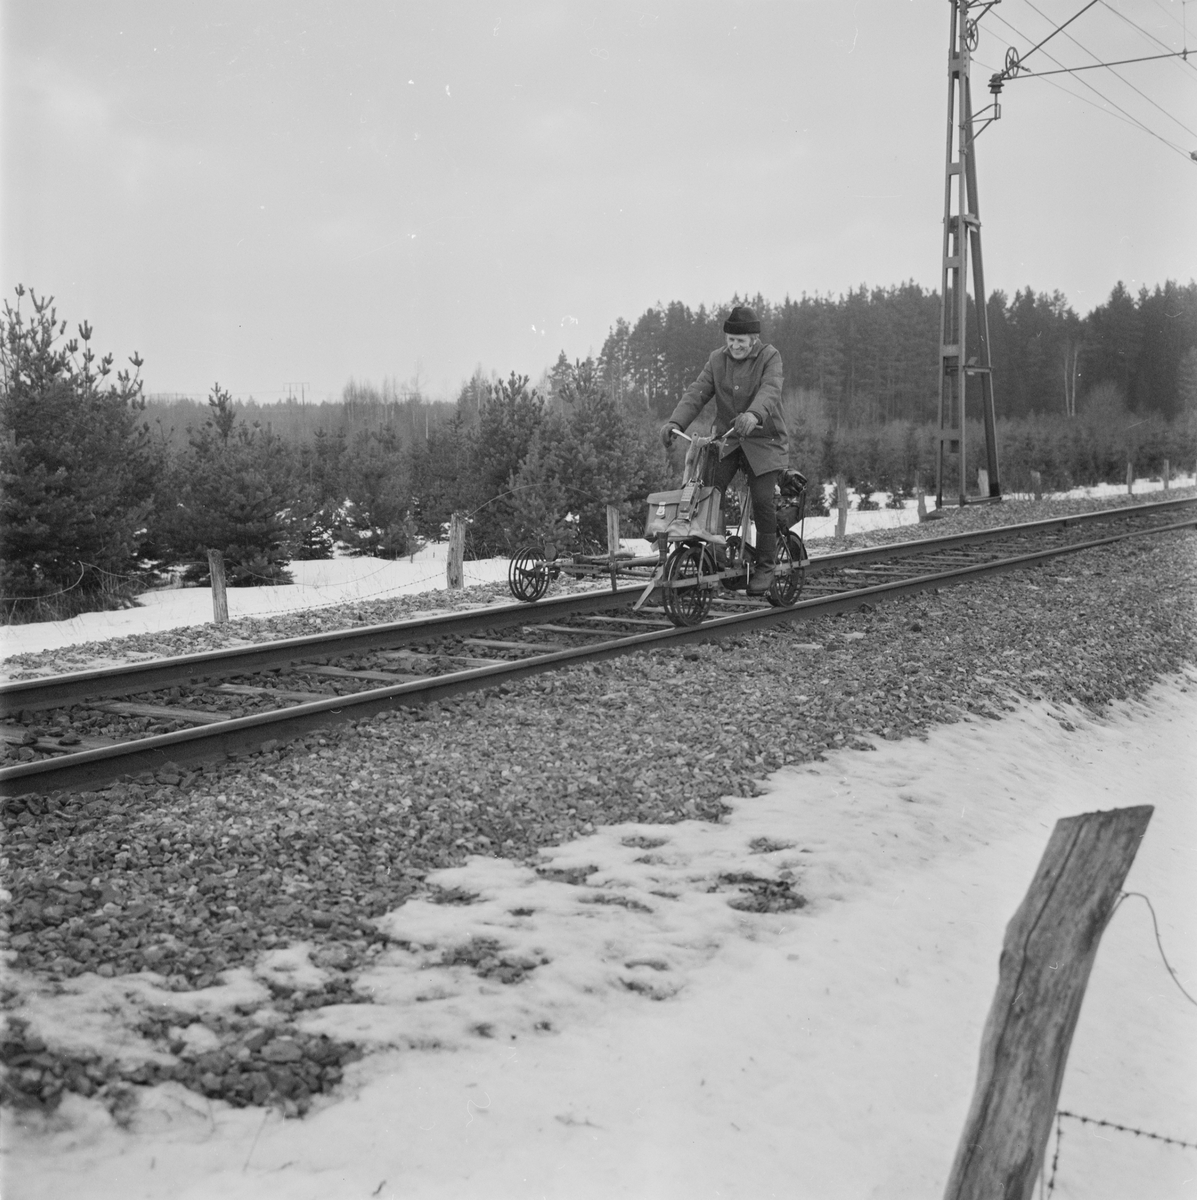 Tierpståg säkrare tack vare besiktningsman Häggström, Uppland, sannolikt januari 1978